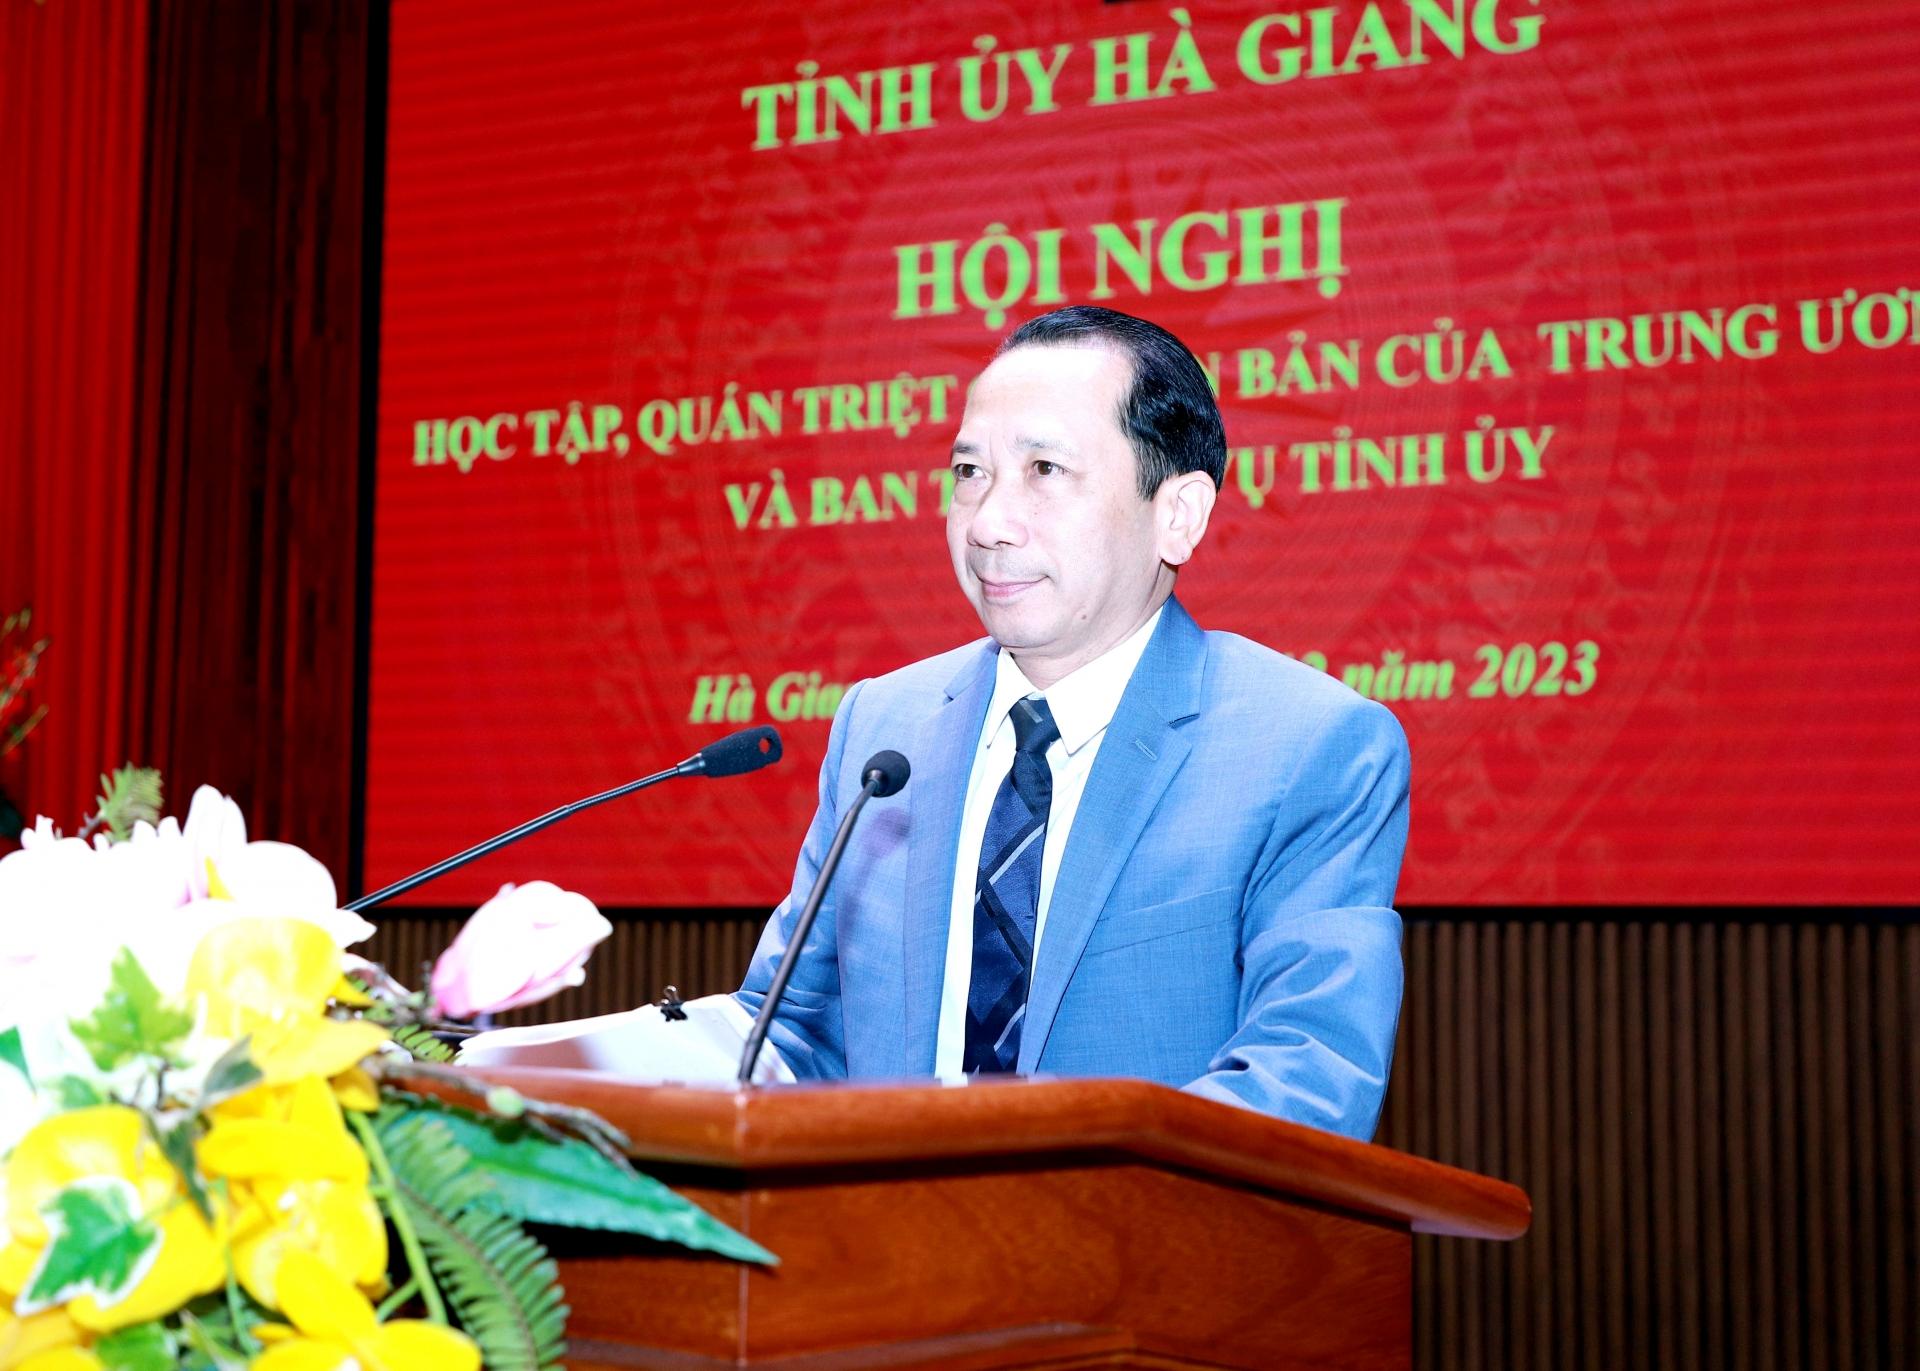 Phó Chủ tịch UBND tỉnh Trần Đức Quý quán triệt các nghị quyết, chỉ thị, kết luận của Bộ Chính trị, Ban Bí thư tại điểm cầu Tỉnh ủy.